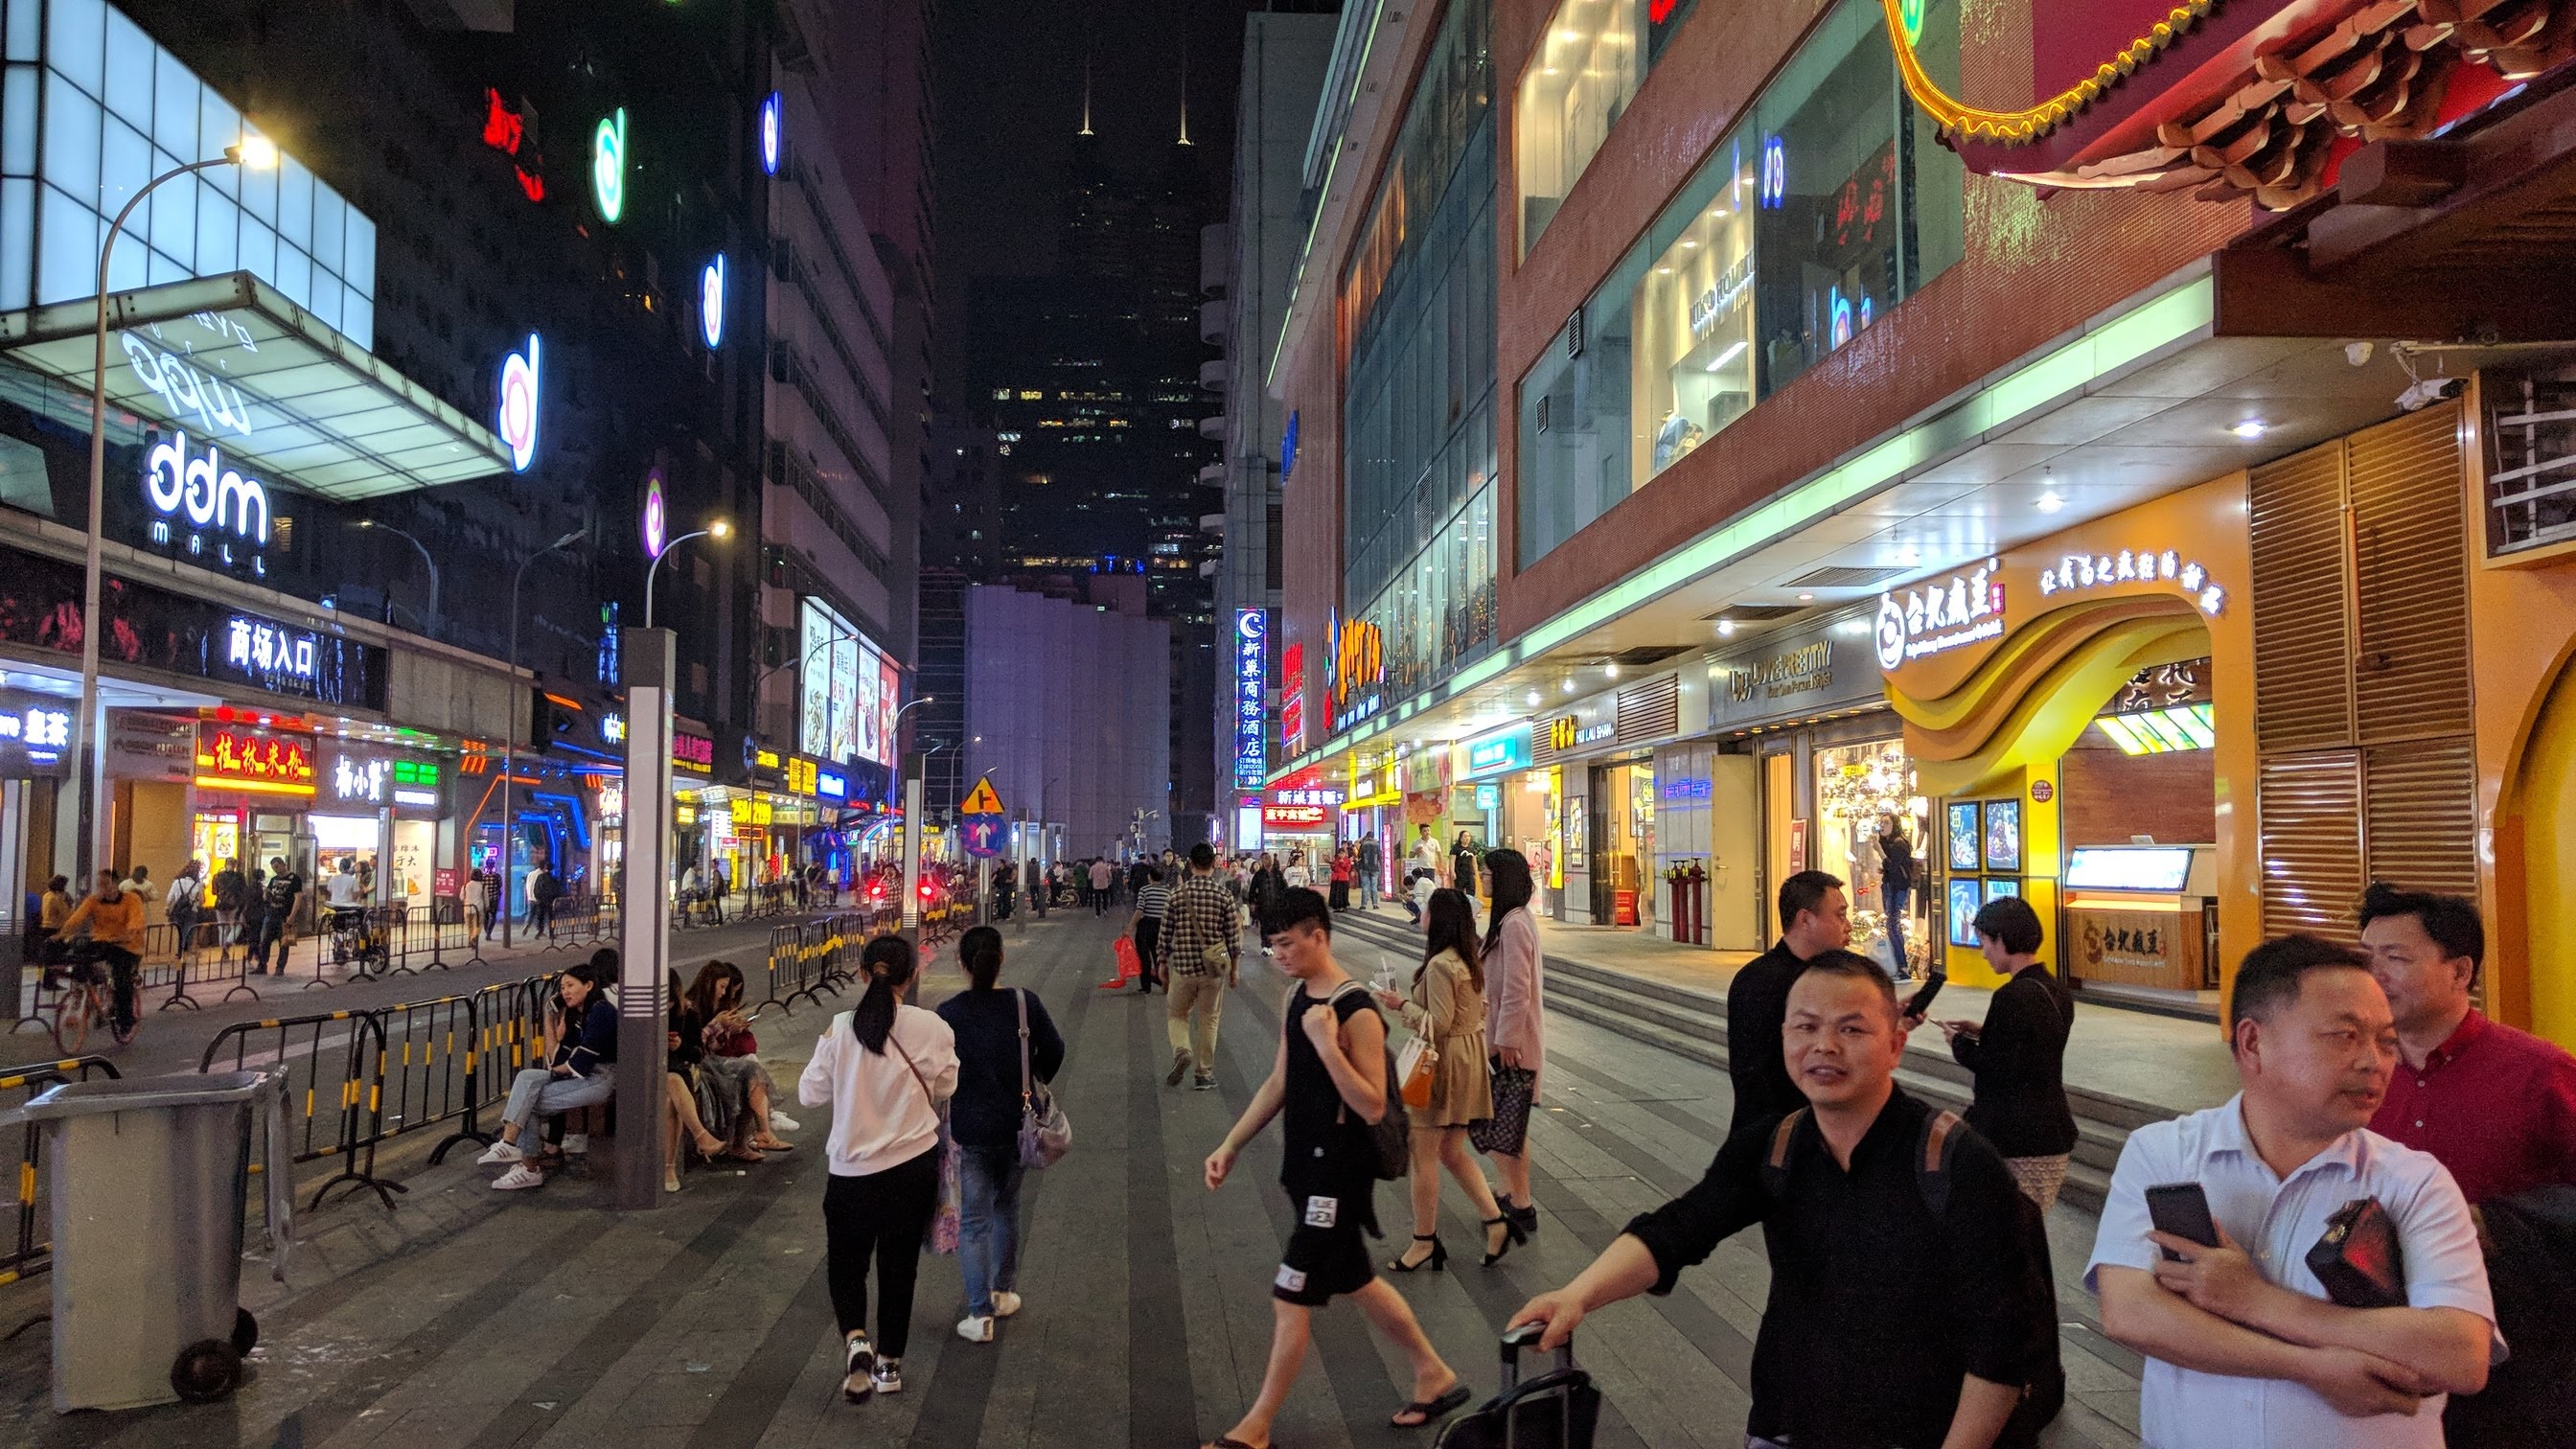 China street scene at night